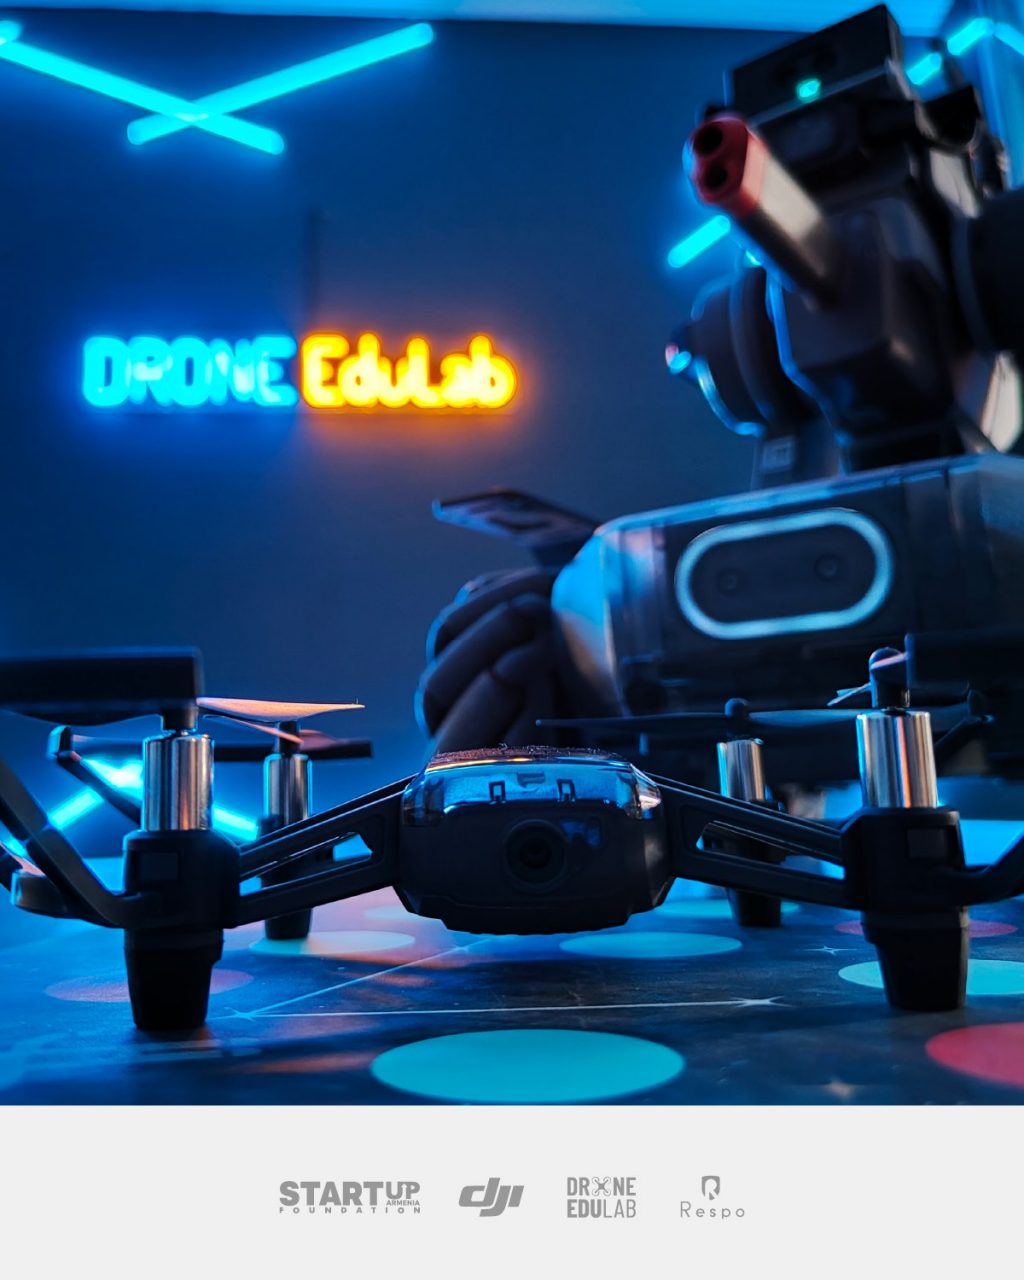 Միացիր Drone Edulab-ի դասընթացին և հնարավորություն ստացիր Robomaster Competition-ին մասնակցելու